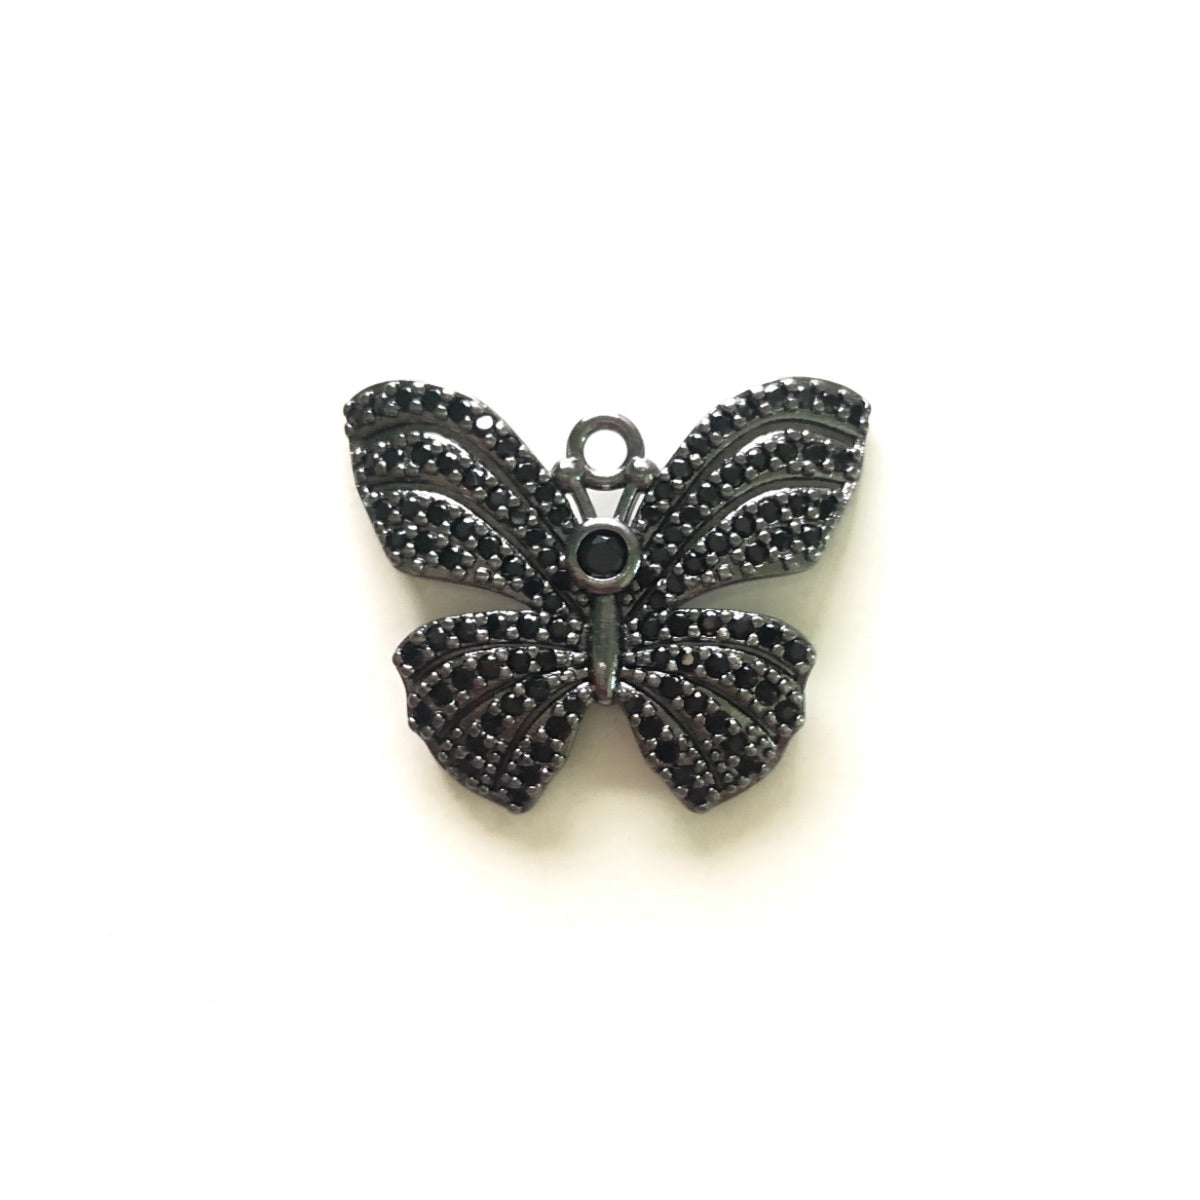 10pcs/lot 24.8*20.4mm CZ Paved Butterfly Charms Black on Black CZ Paved Charms Butterflies Charms Beads Beyond